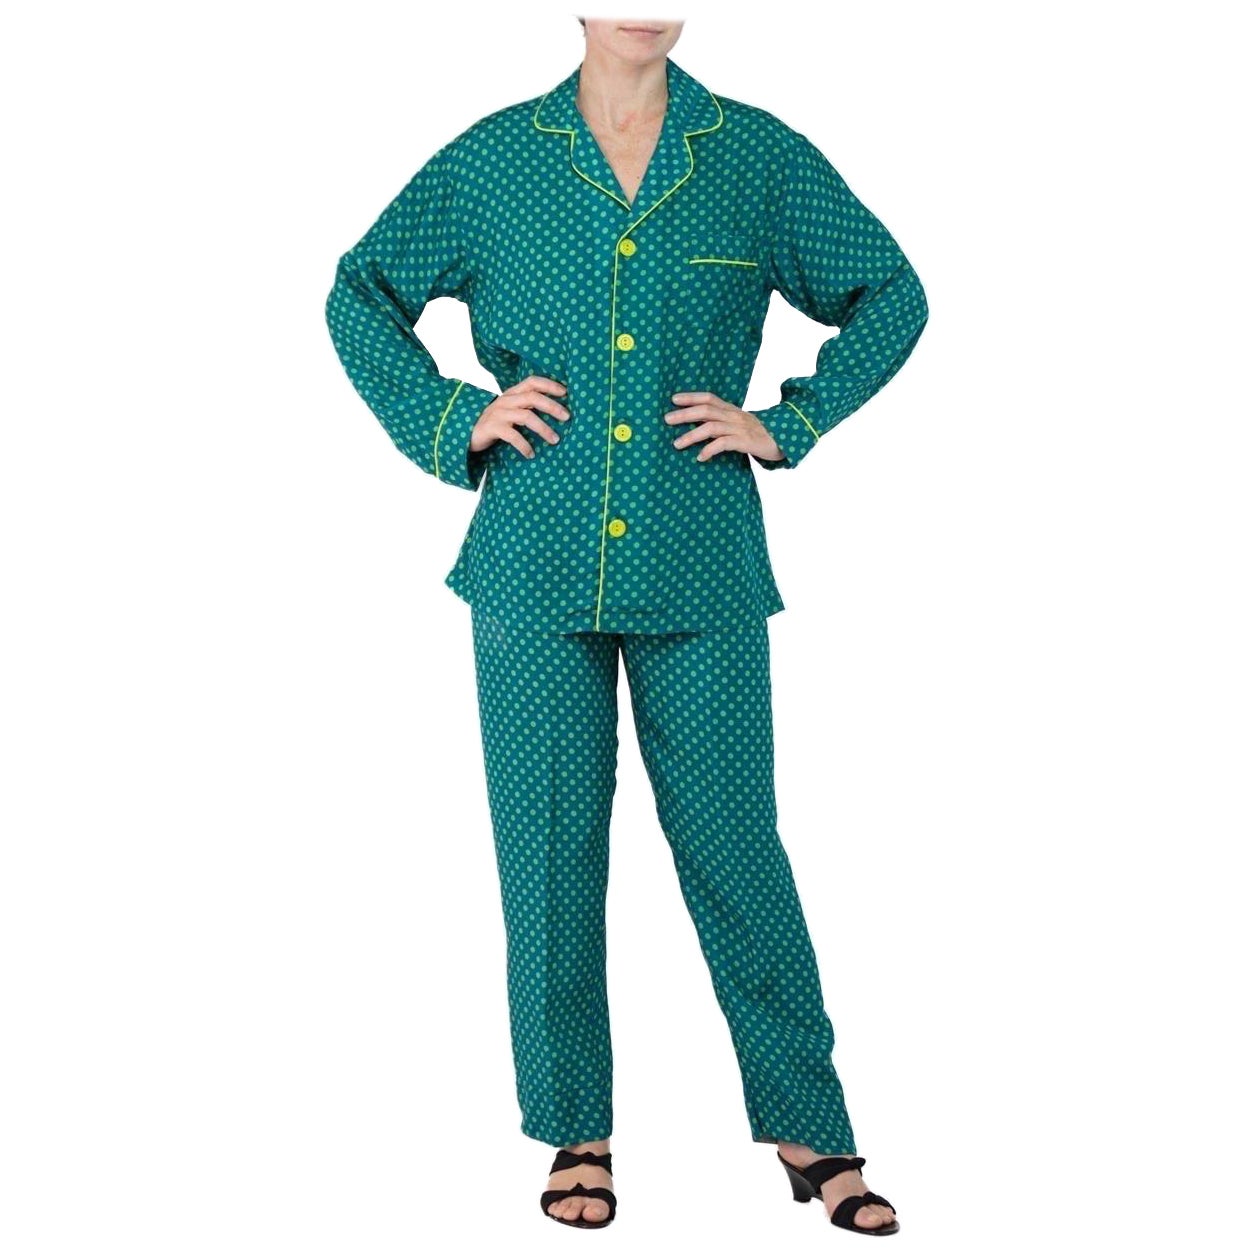 Morphew Collection Sea Green Polka Dot Print Cold Rayon Bias Draw String Pajamas